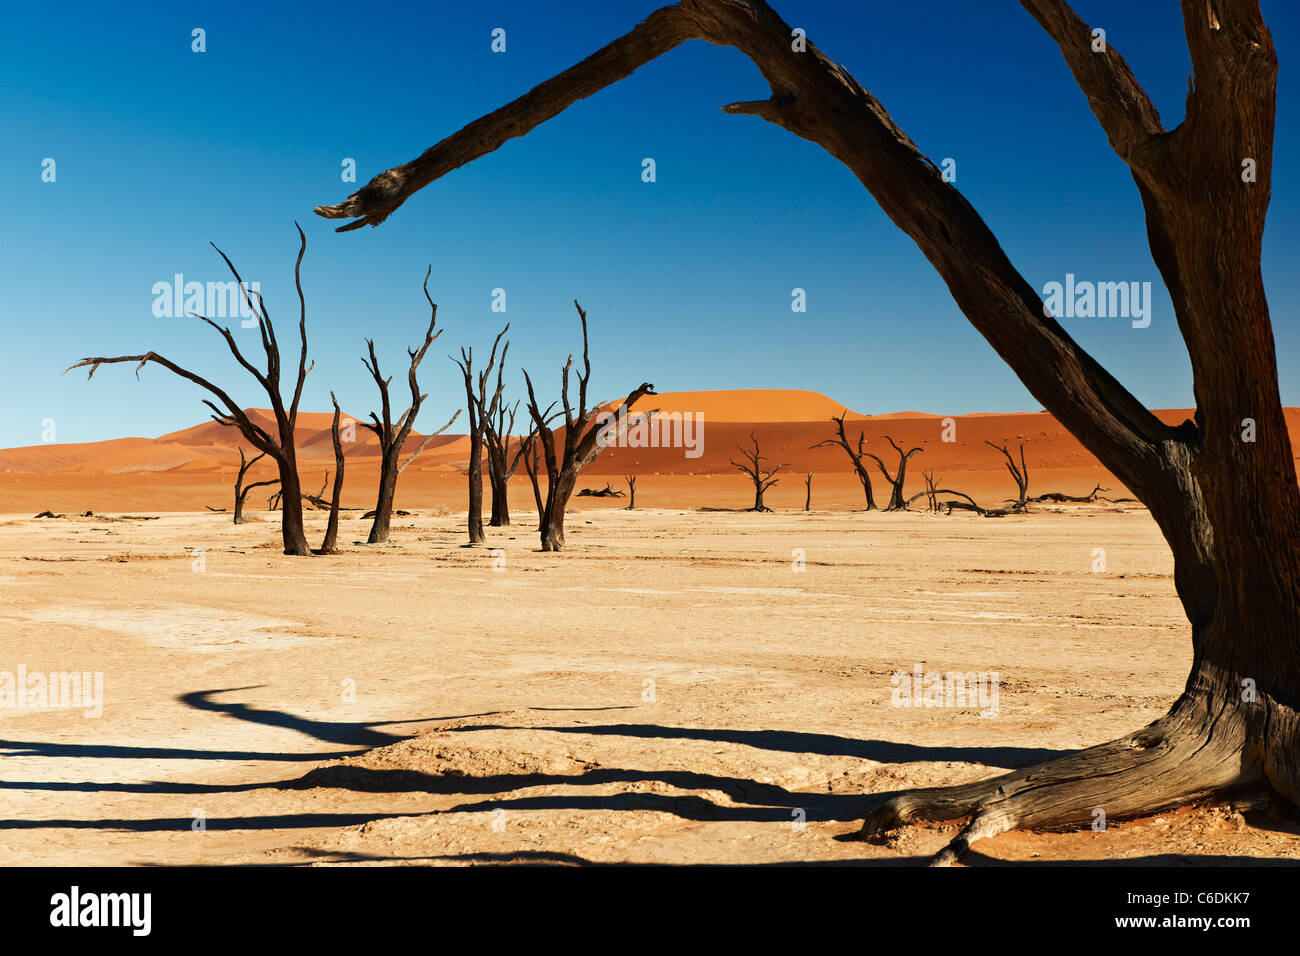 Célèbre Dead vlei avec arbres morts dans le lac de sel sec, paysage désertique du Namib à Sossusvlei, Namib-Naukluft National Park La Namibie Banque D'Images